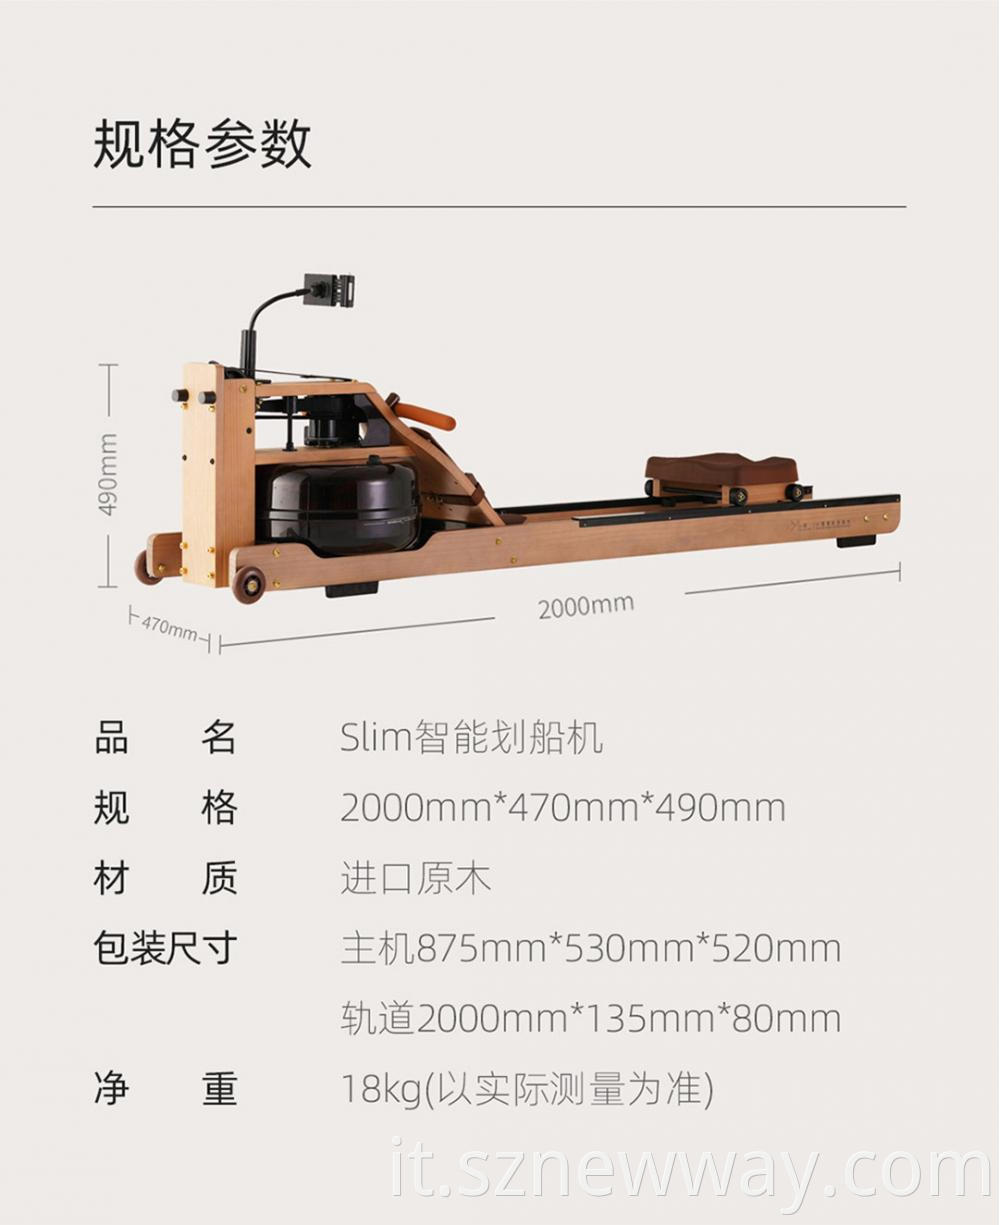 Xiaomo Rowing Machine